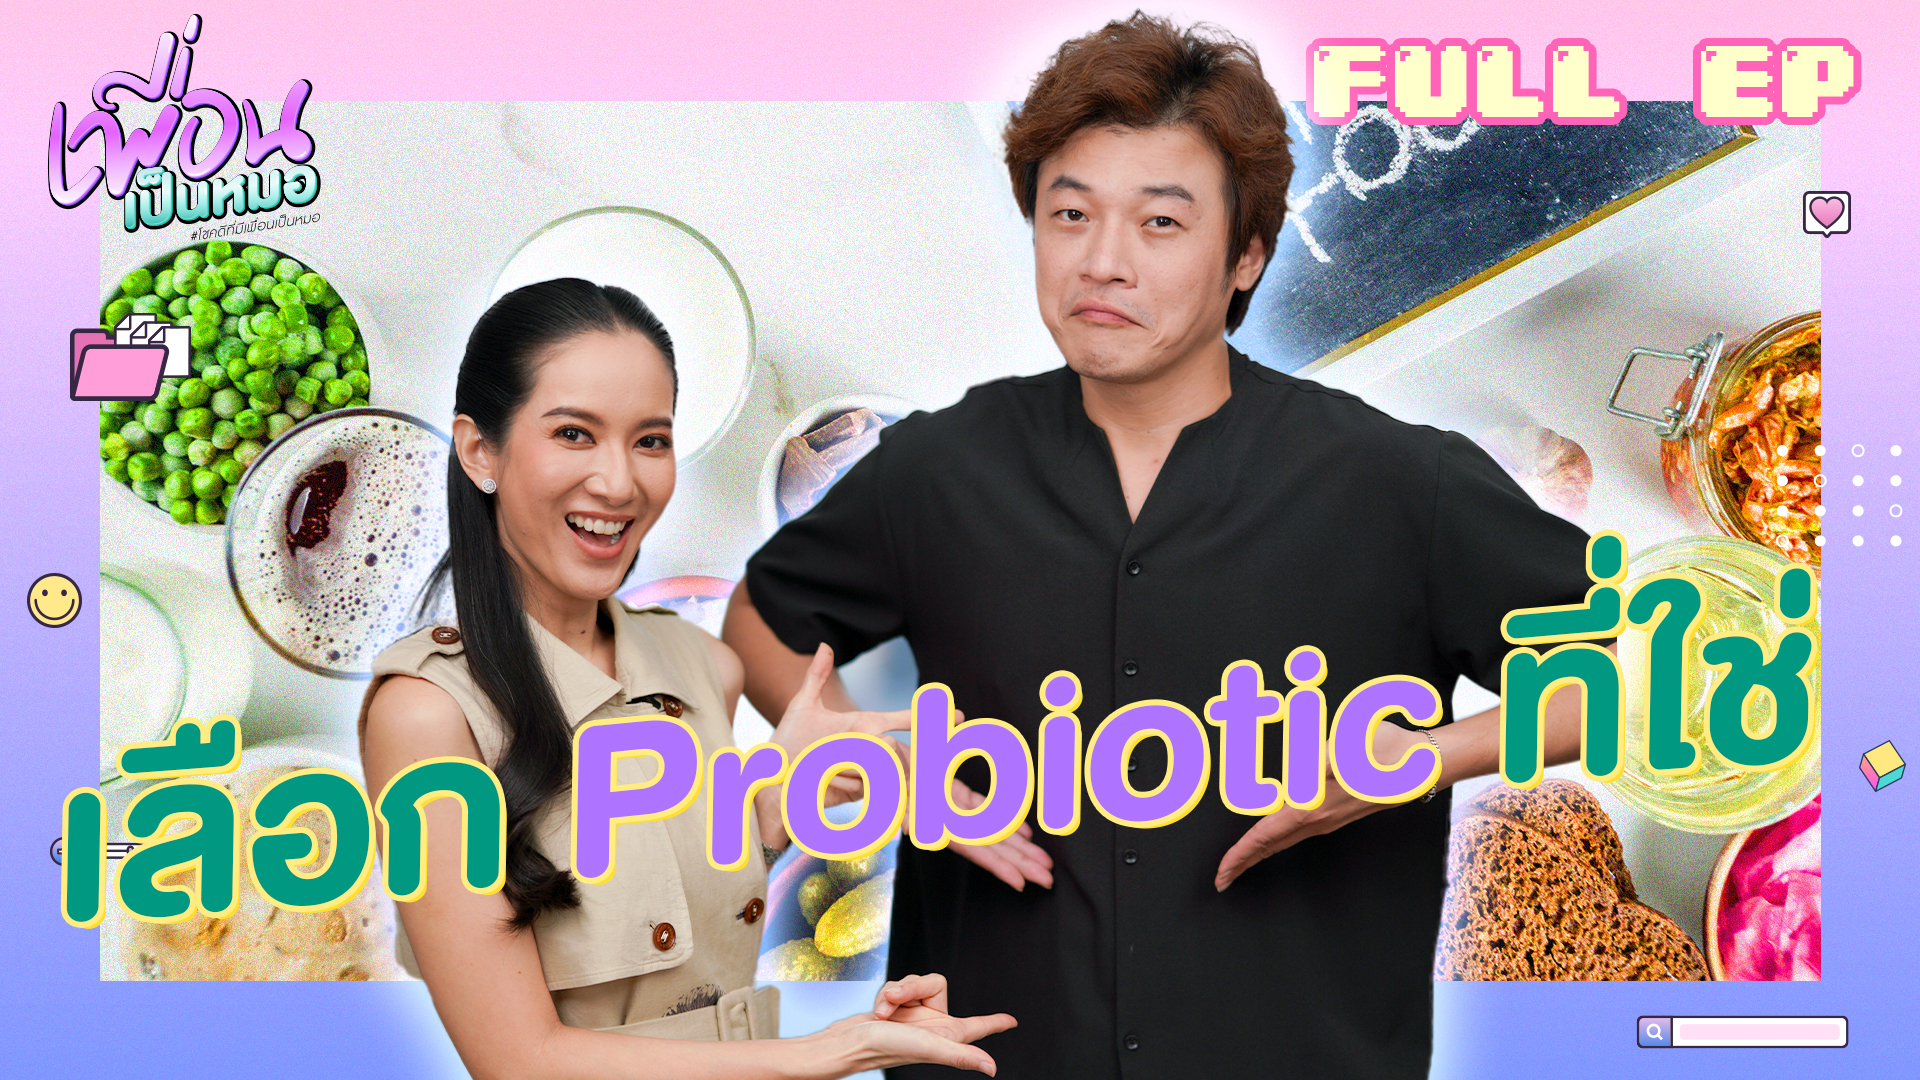 เลือก Probiotic ที่ใช่กับตัวเราได้ไม่ยาก | FULL EP.32